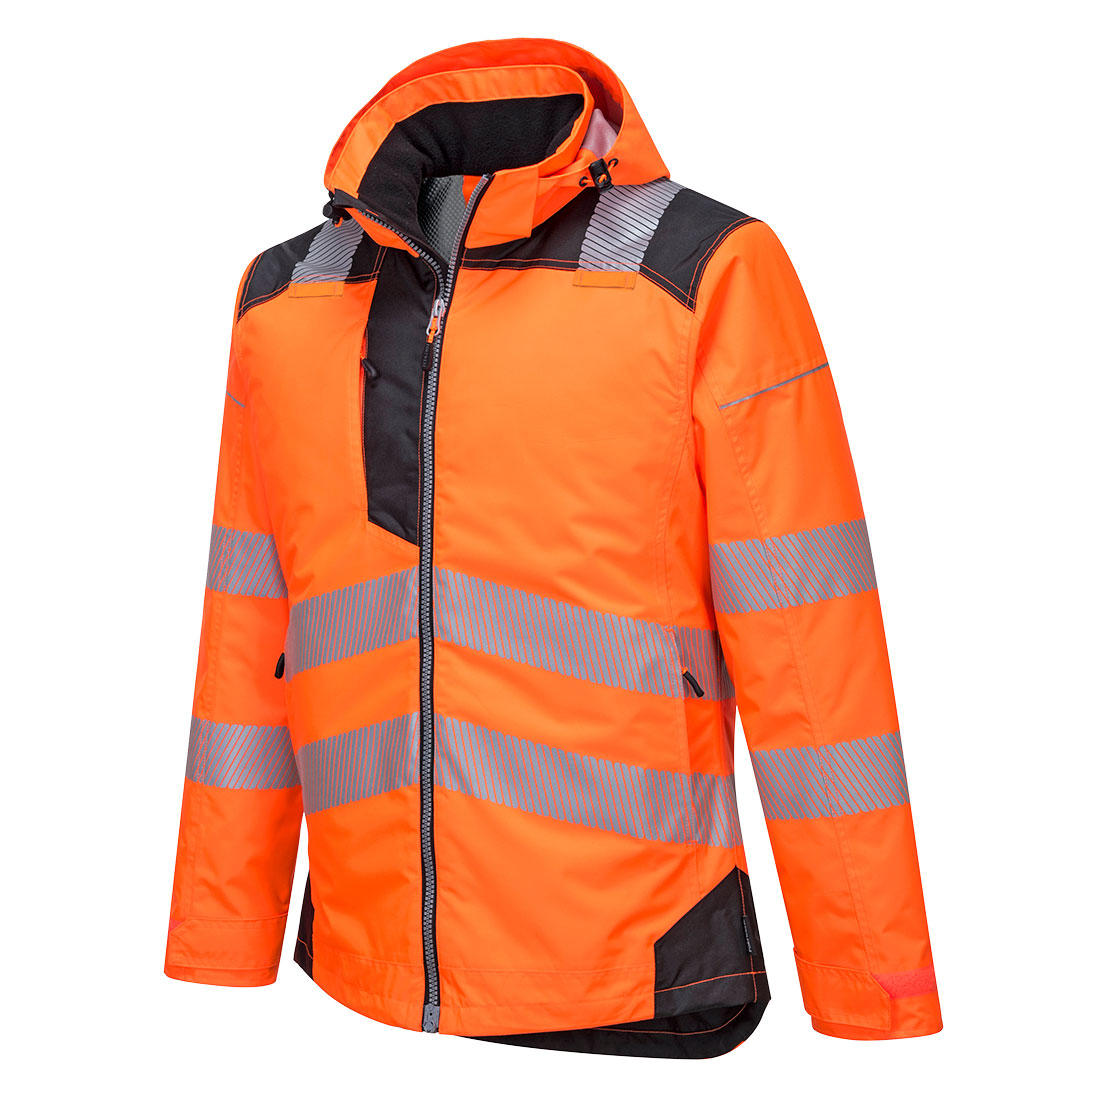 Portwest T400 PW3 Hi Vis Winter Jacket 1#colour_orange-black 2#colour_orange-black 3#colour_orange-black